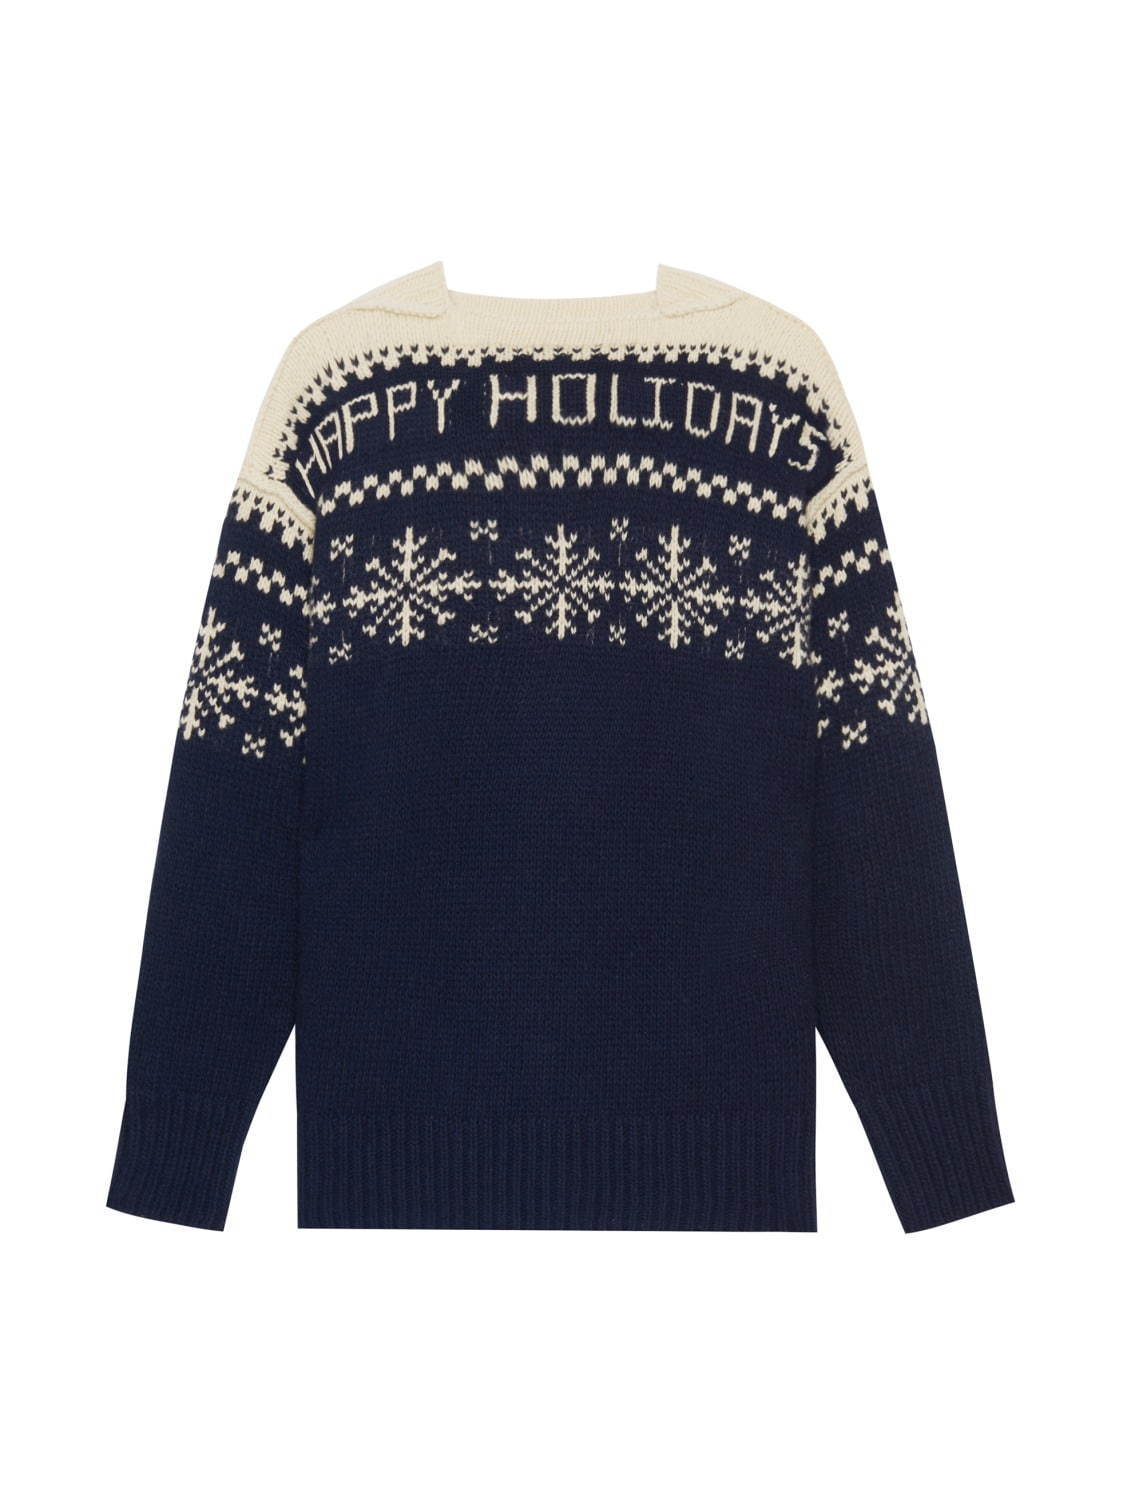 エトロ 雪の結晶 を配したセーターやマフラーなどがユニセックスで クリスマス着想のデザイン ファッションプレス